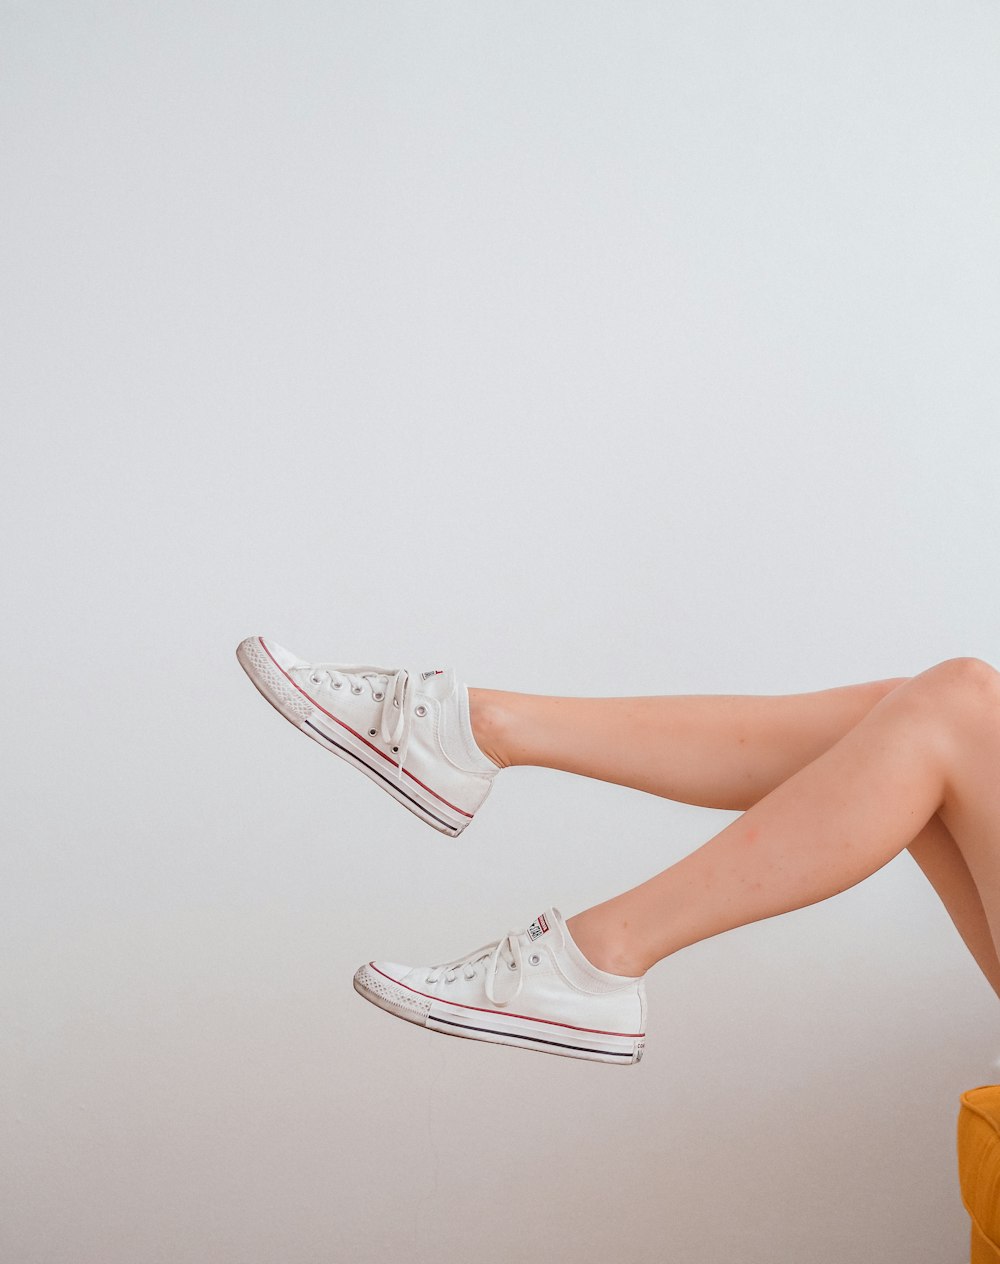 Foto mujer en zapatillas bajas blancas – Imagen Vereinigtes königreich  gratis en Unsplash